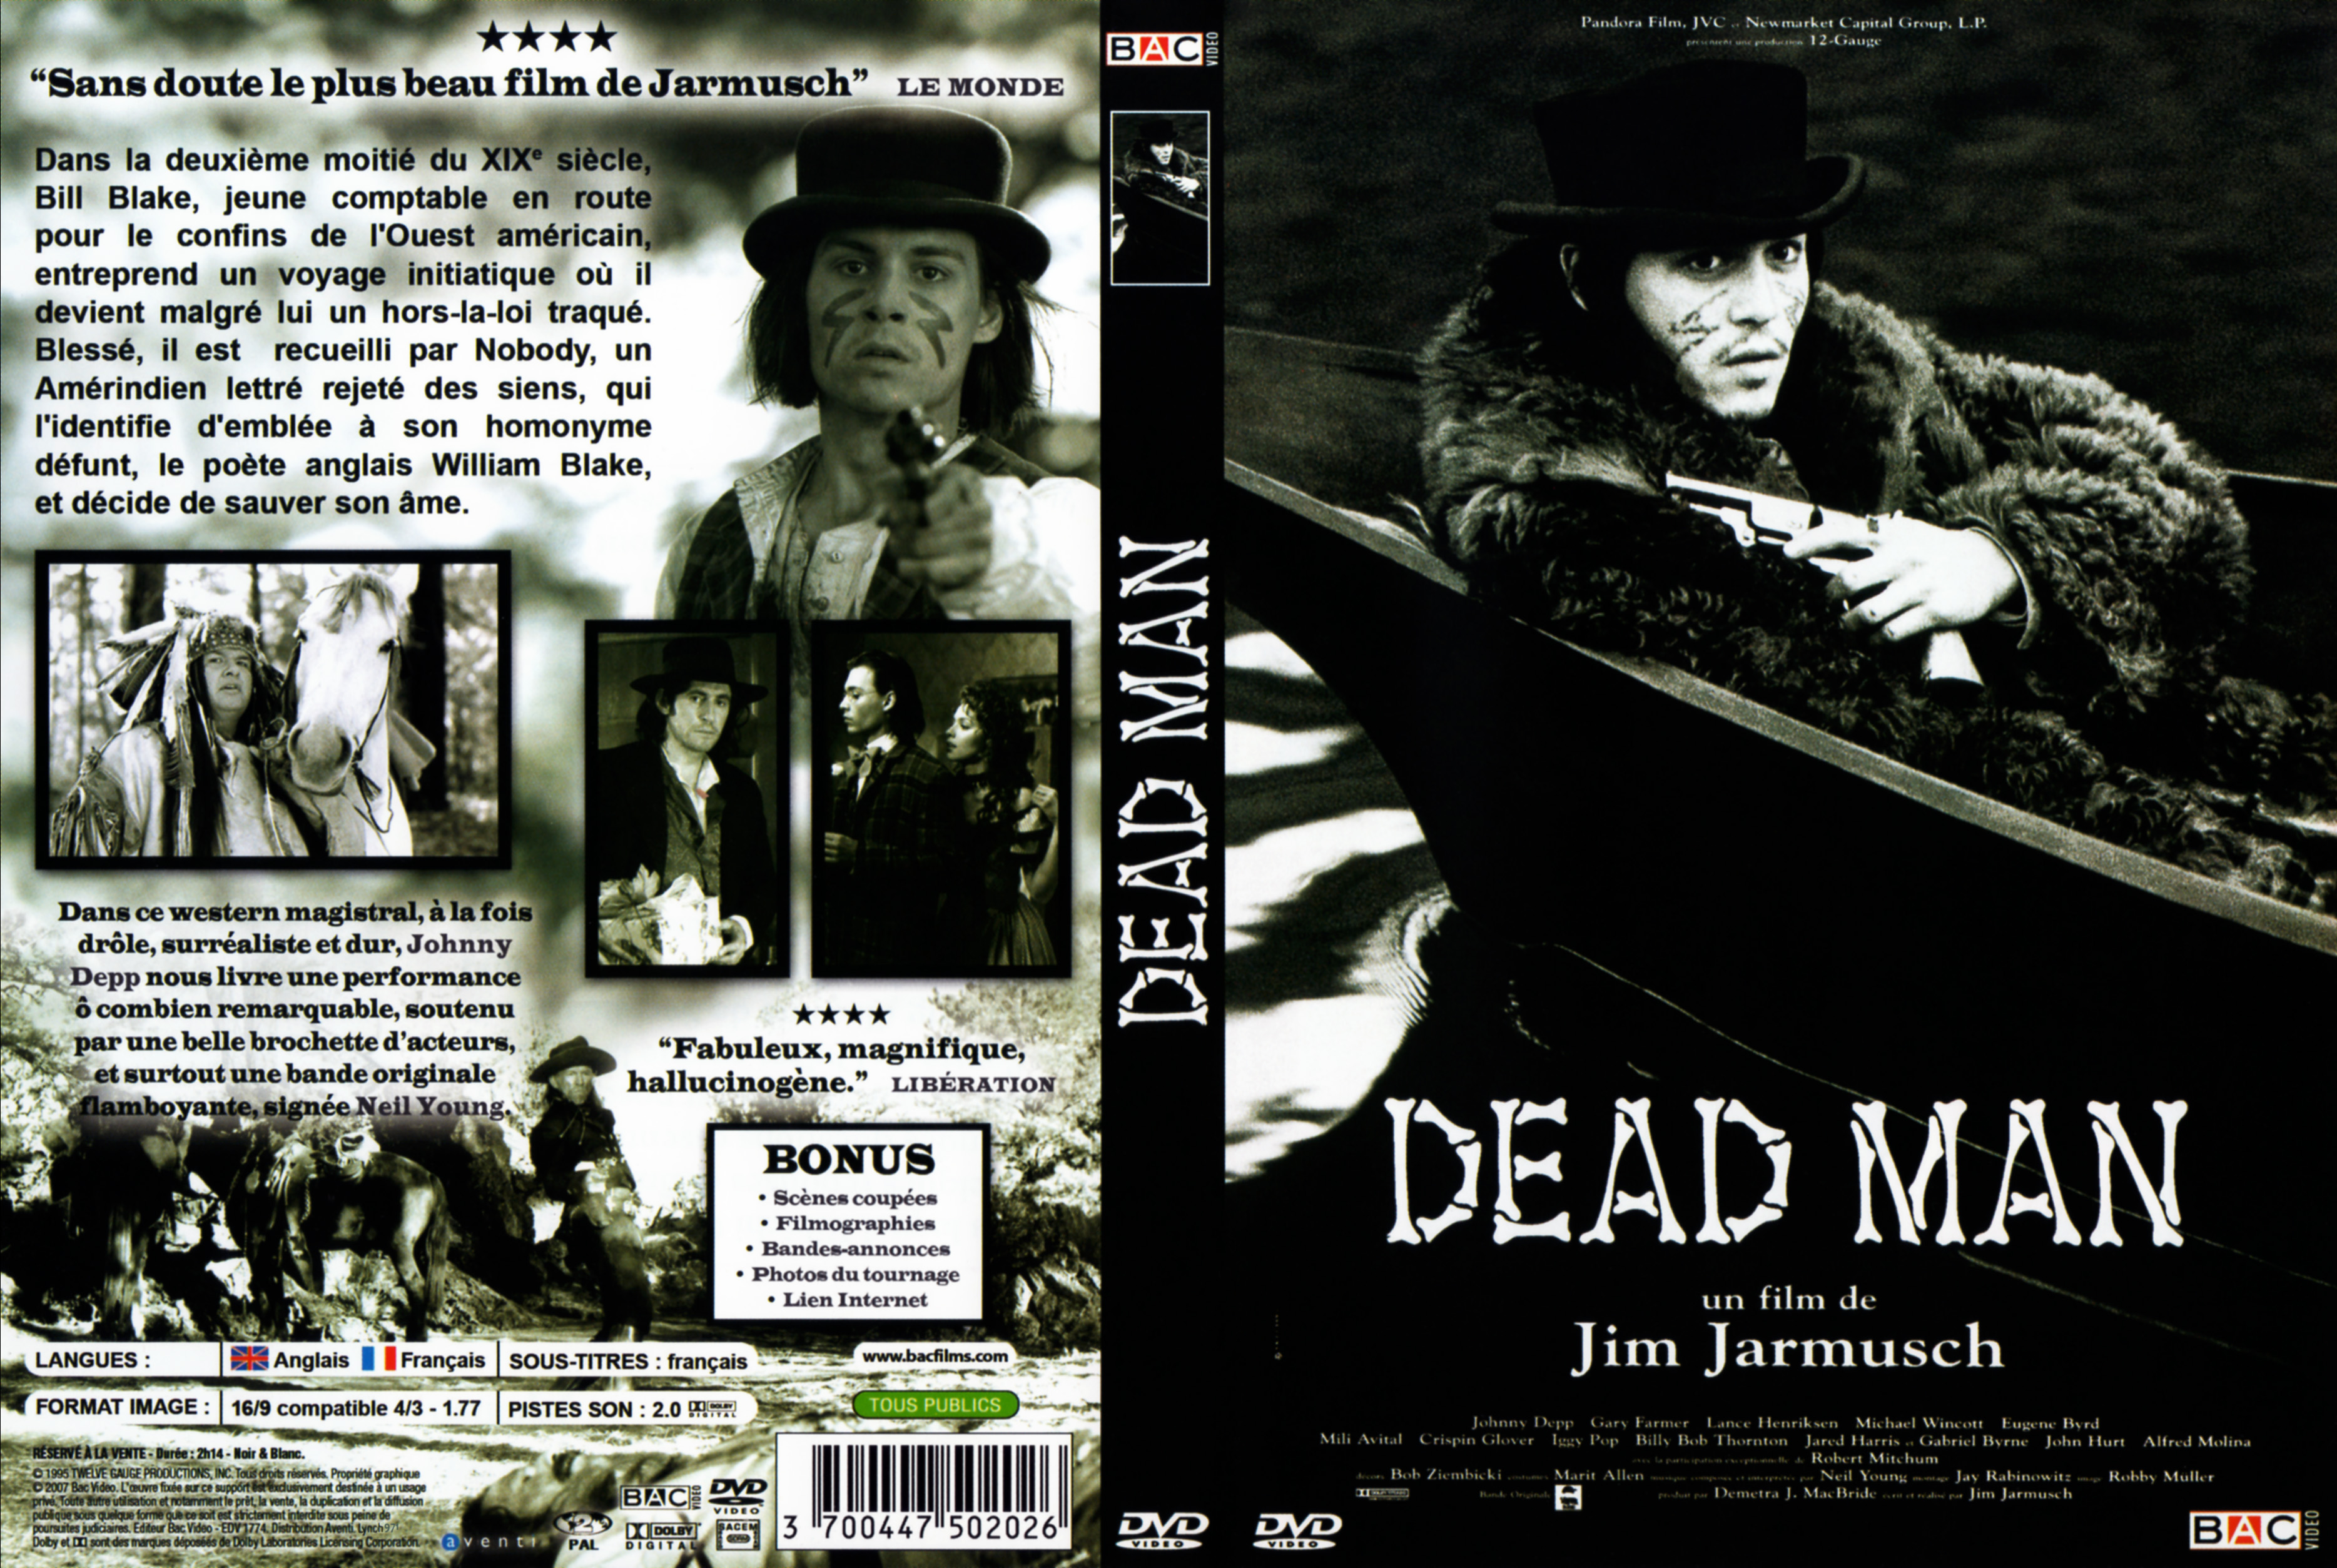 Jaquette DVD Dead man v2